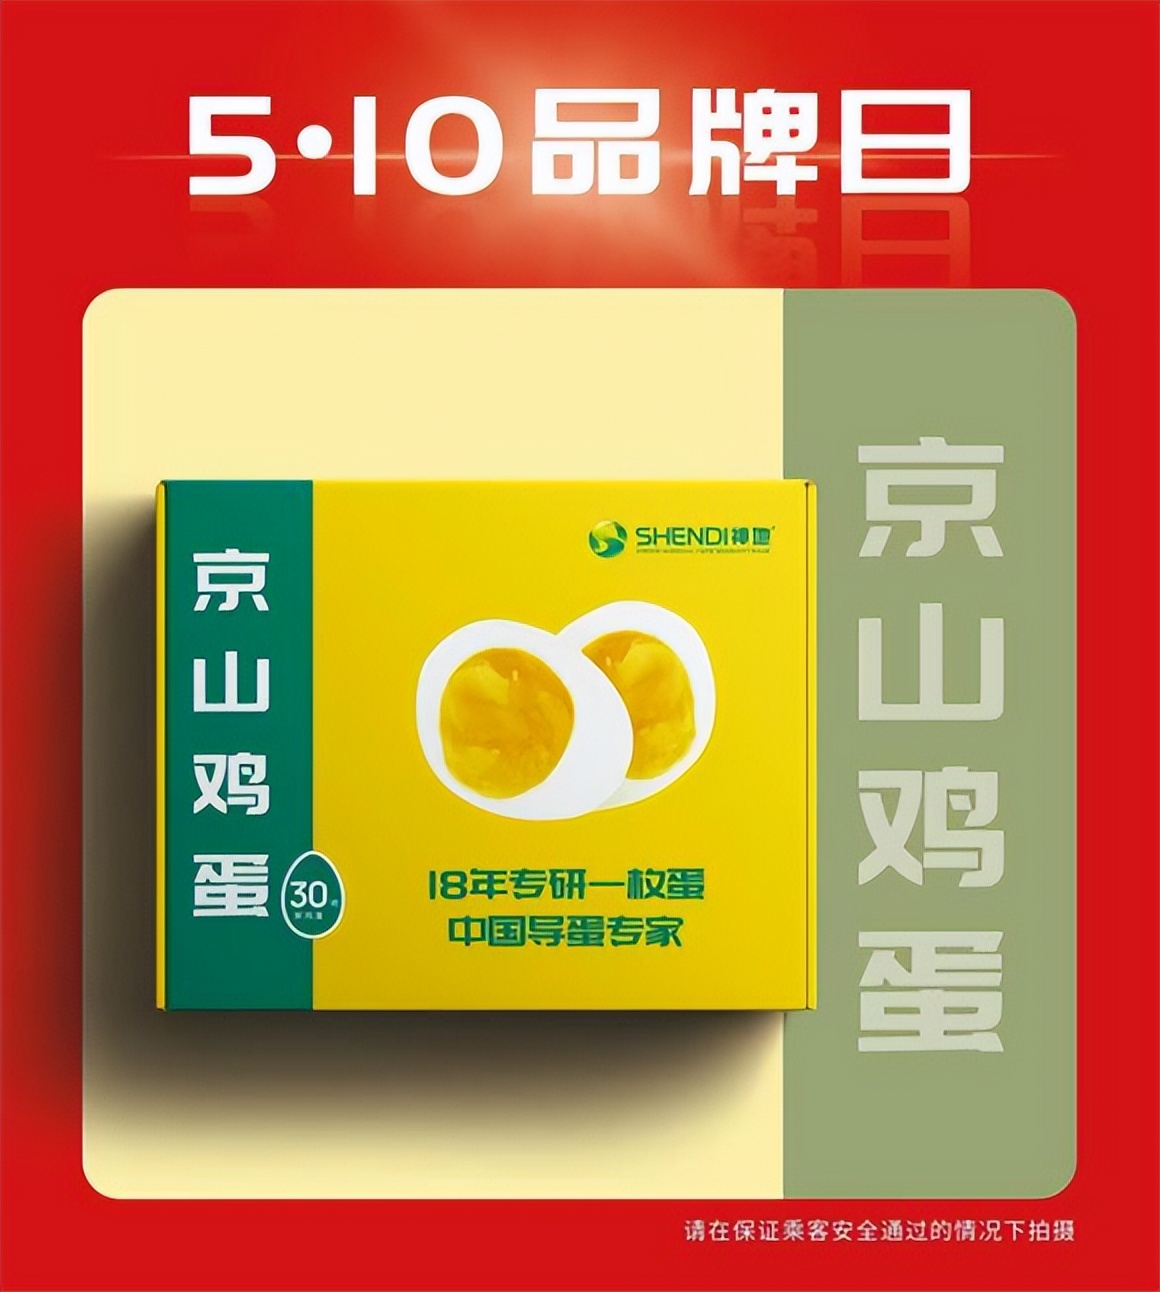 510中国品牌日 蛋生元品牌亮相北京地铁1号线尽享国货高光时刻